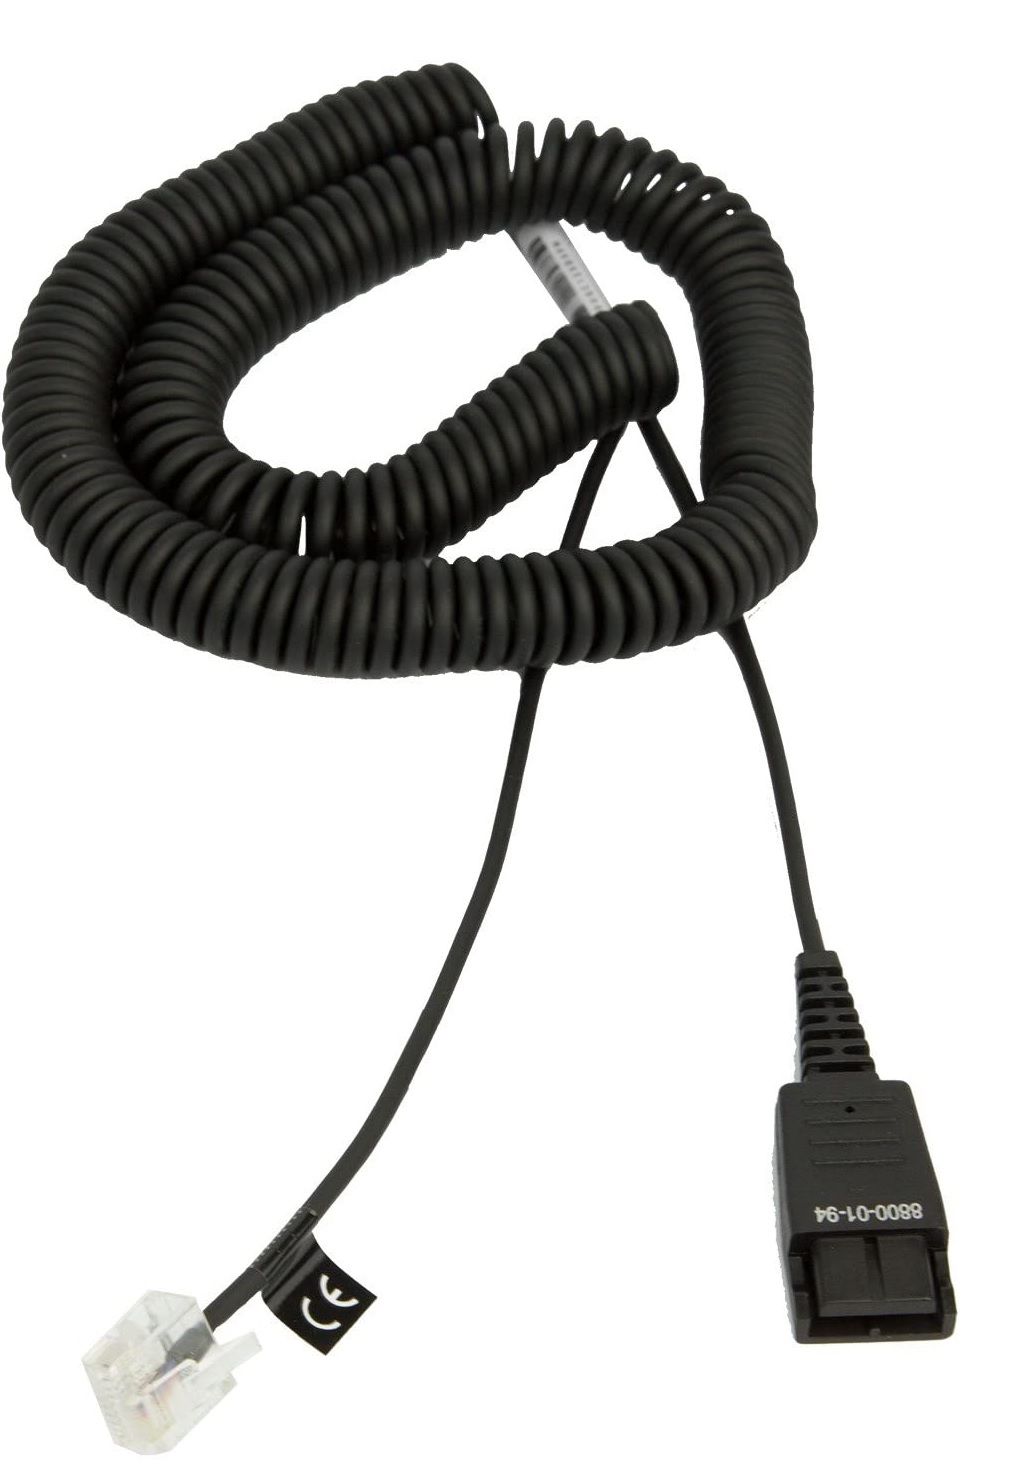 Cable Adaptador QD a RJ-45 - Jabra 8800-01-94 | 2109 - Cable de desconexión rápida QD a Modular RJ-45 para teléfonos Siemens OpenStage, Color: Negro, Espiral, Longitud: 50 cm, Longitud espiral: 2 m, Conector RJ45 y QD